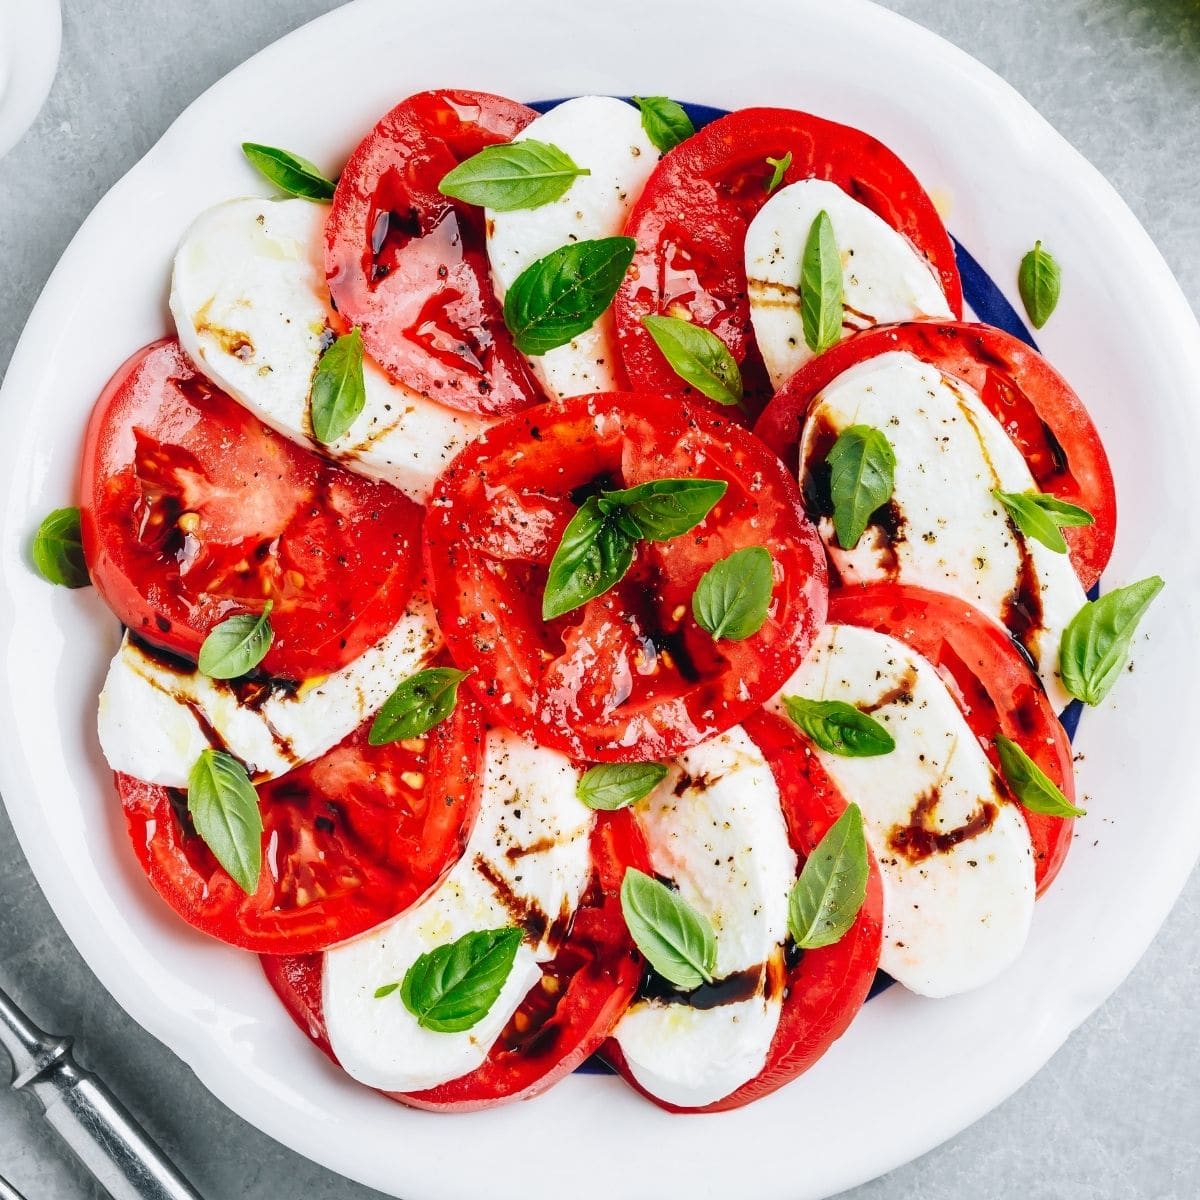 Salad caprese terbaik disajikan saat tomat, mozzarella, dan basil segar dan bersemangat.